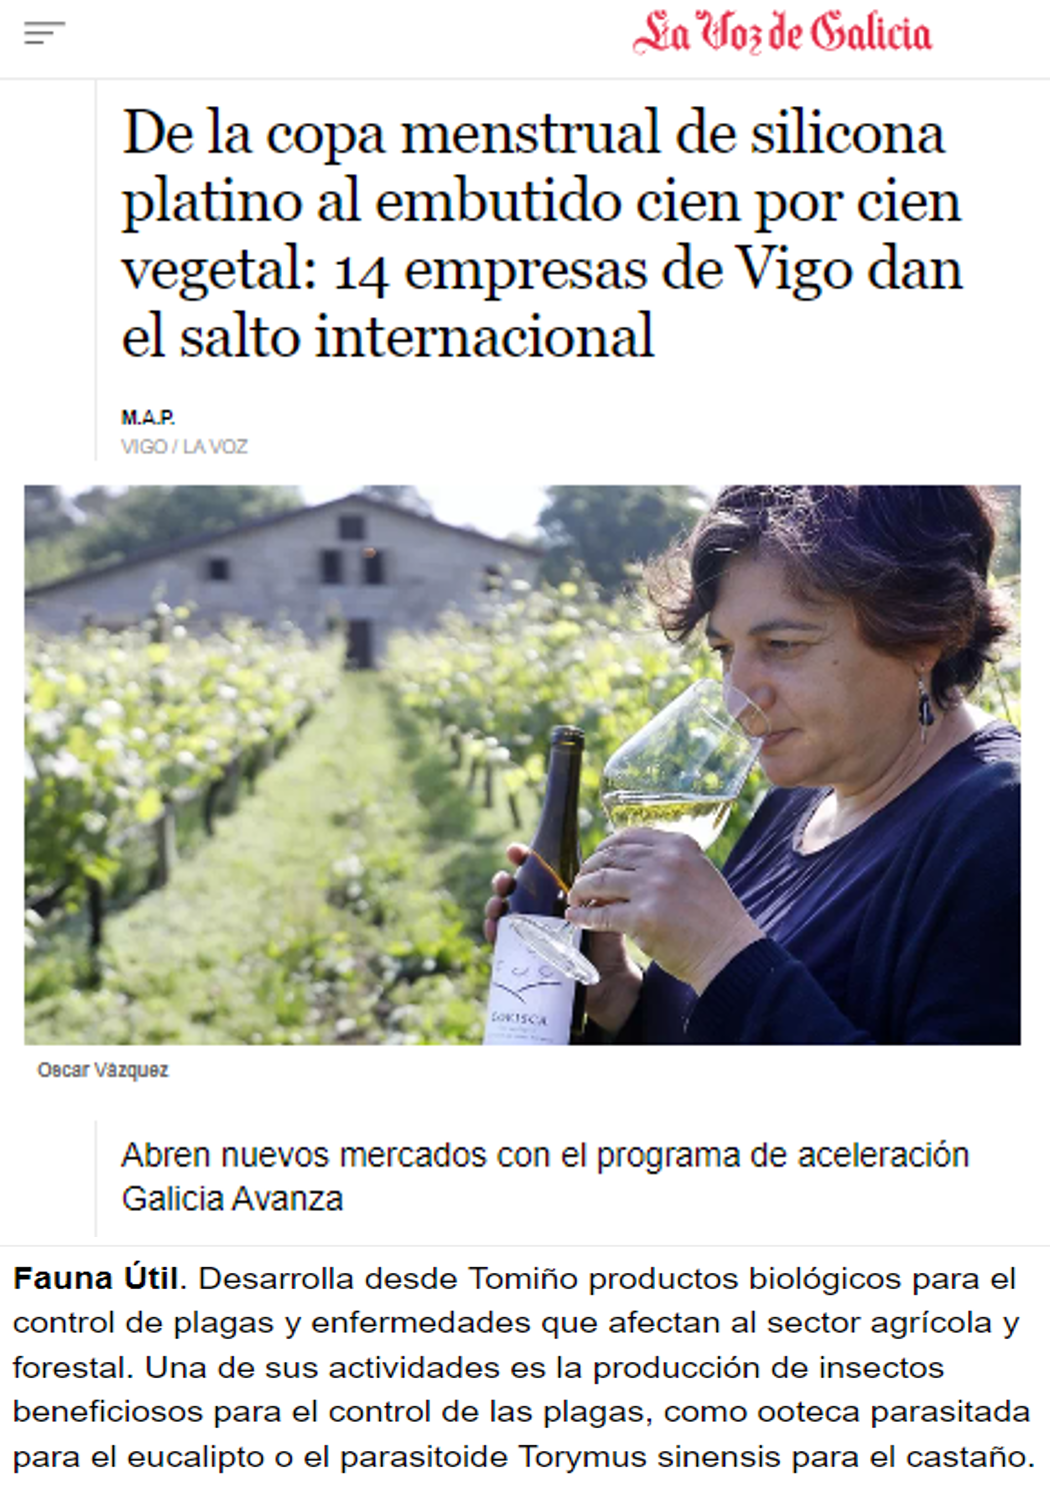 De la copa menstrual de silicona platino al embutido cien por cien vegetal: 14 empresas de Vigo dan el salto internacional